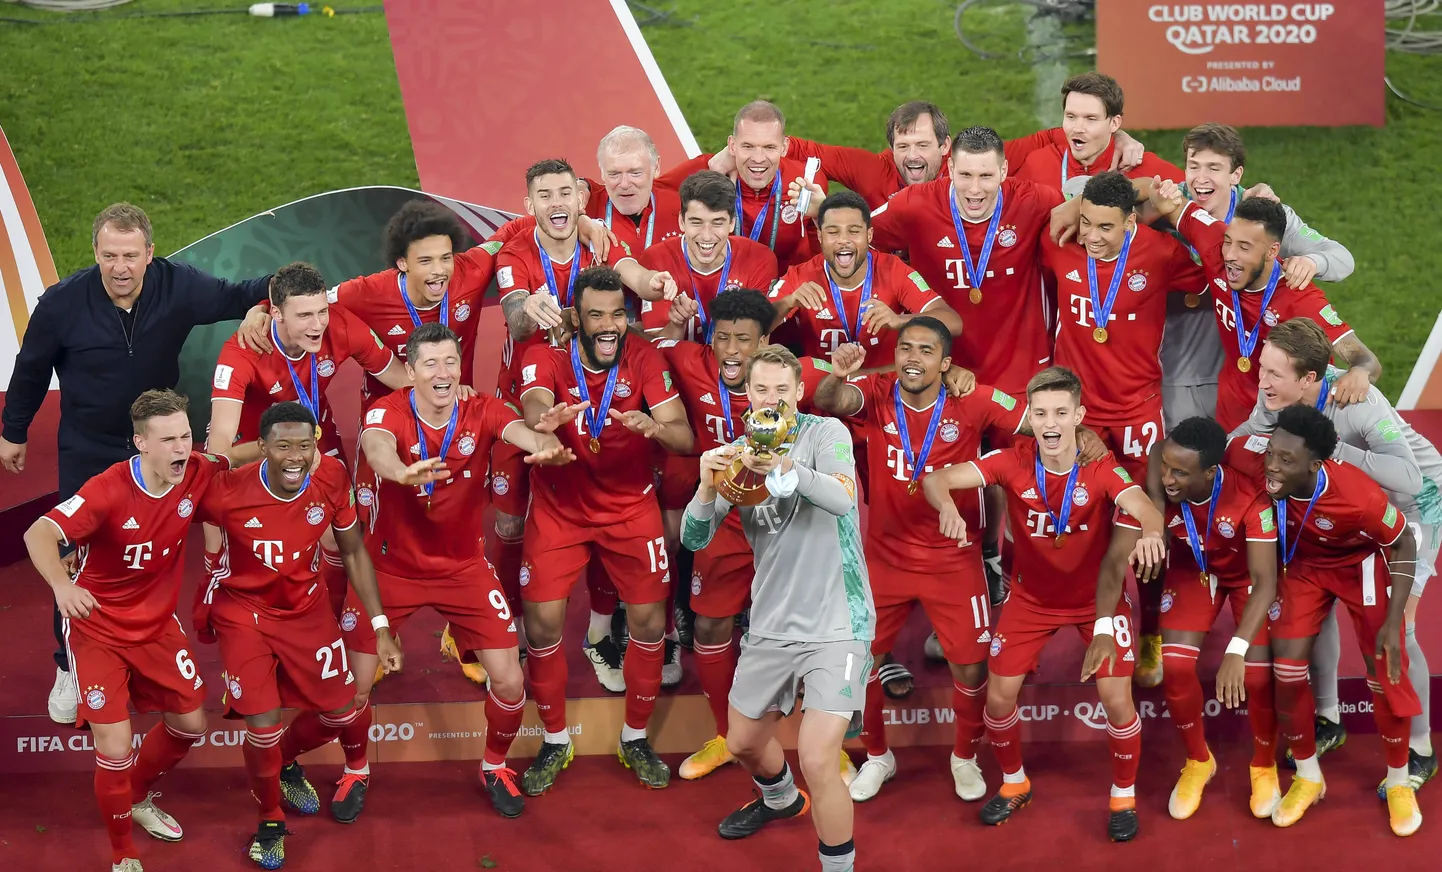 Мюнхенская "Бавария" выиграла клубный чемпионат мира по футболу.